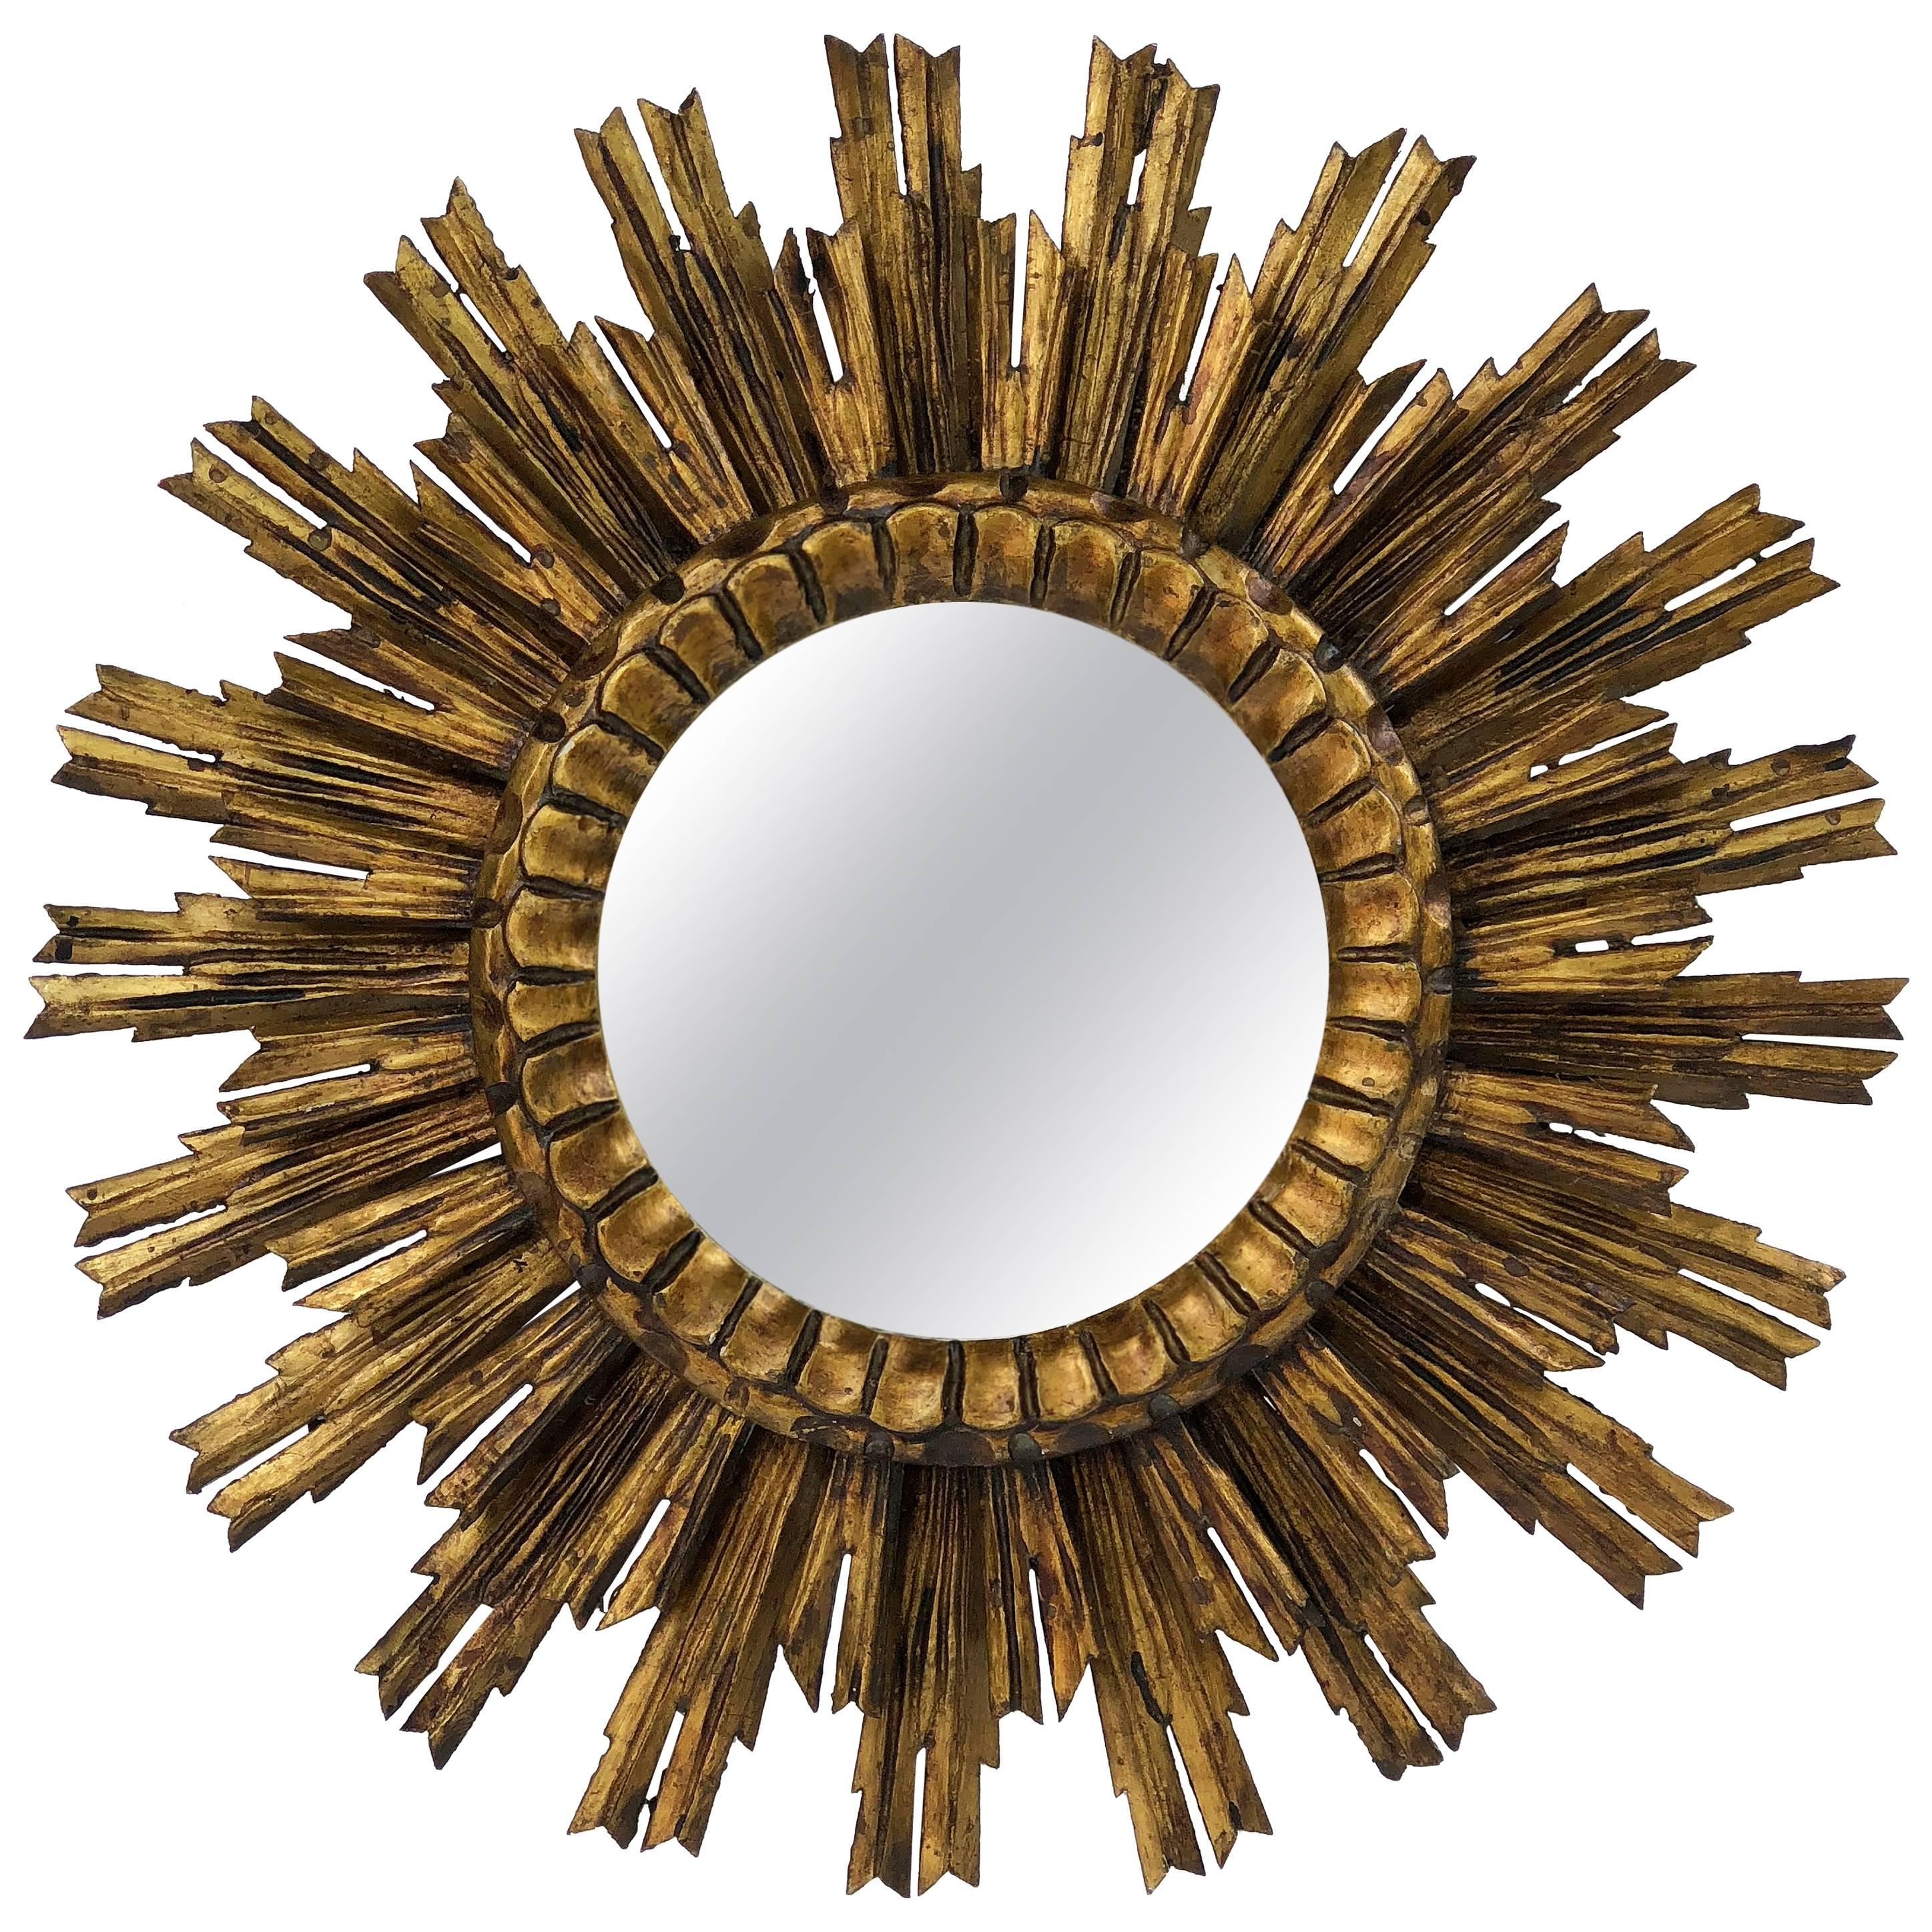 French Gilt Starburst or Sunburst Mirror (Diameter 24)